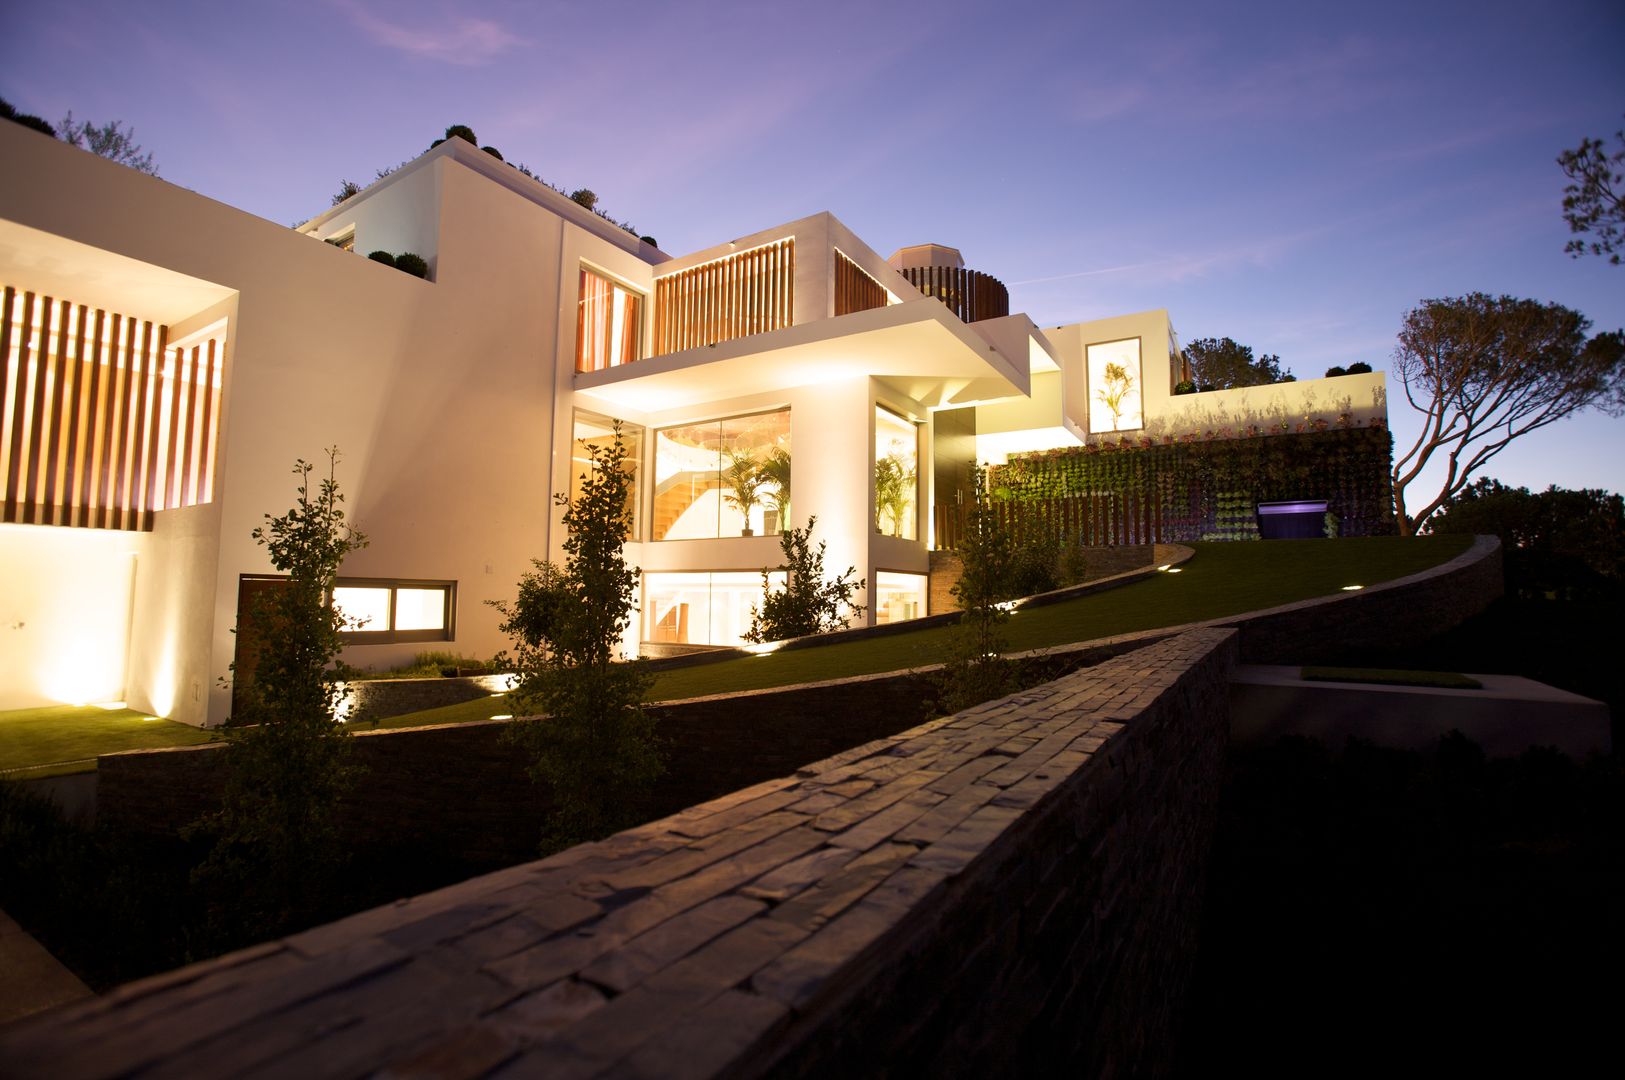 Casa Feng Shui * Quinta do Lago - Algarve, LC Vertical Gardens LC Vertical Gardens Jardines de estilo moderno Plantas y flores